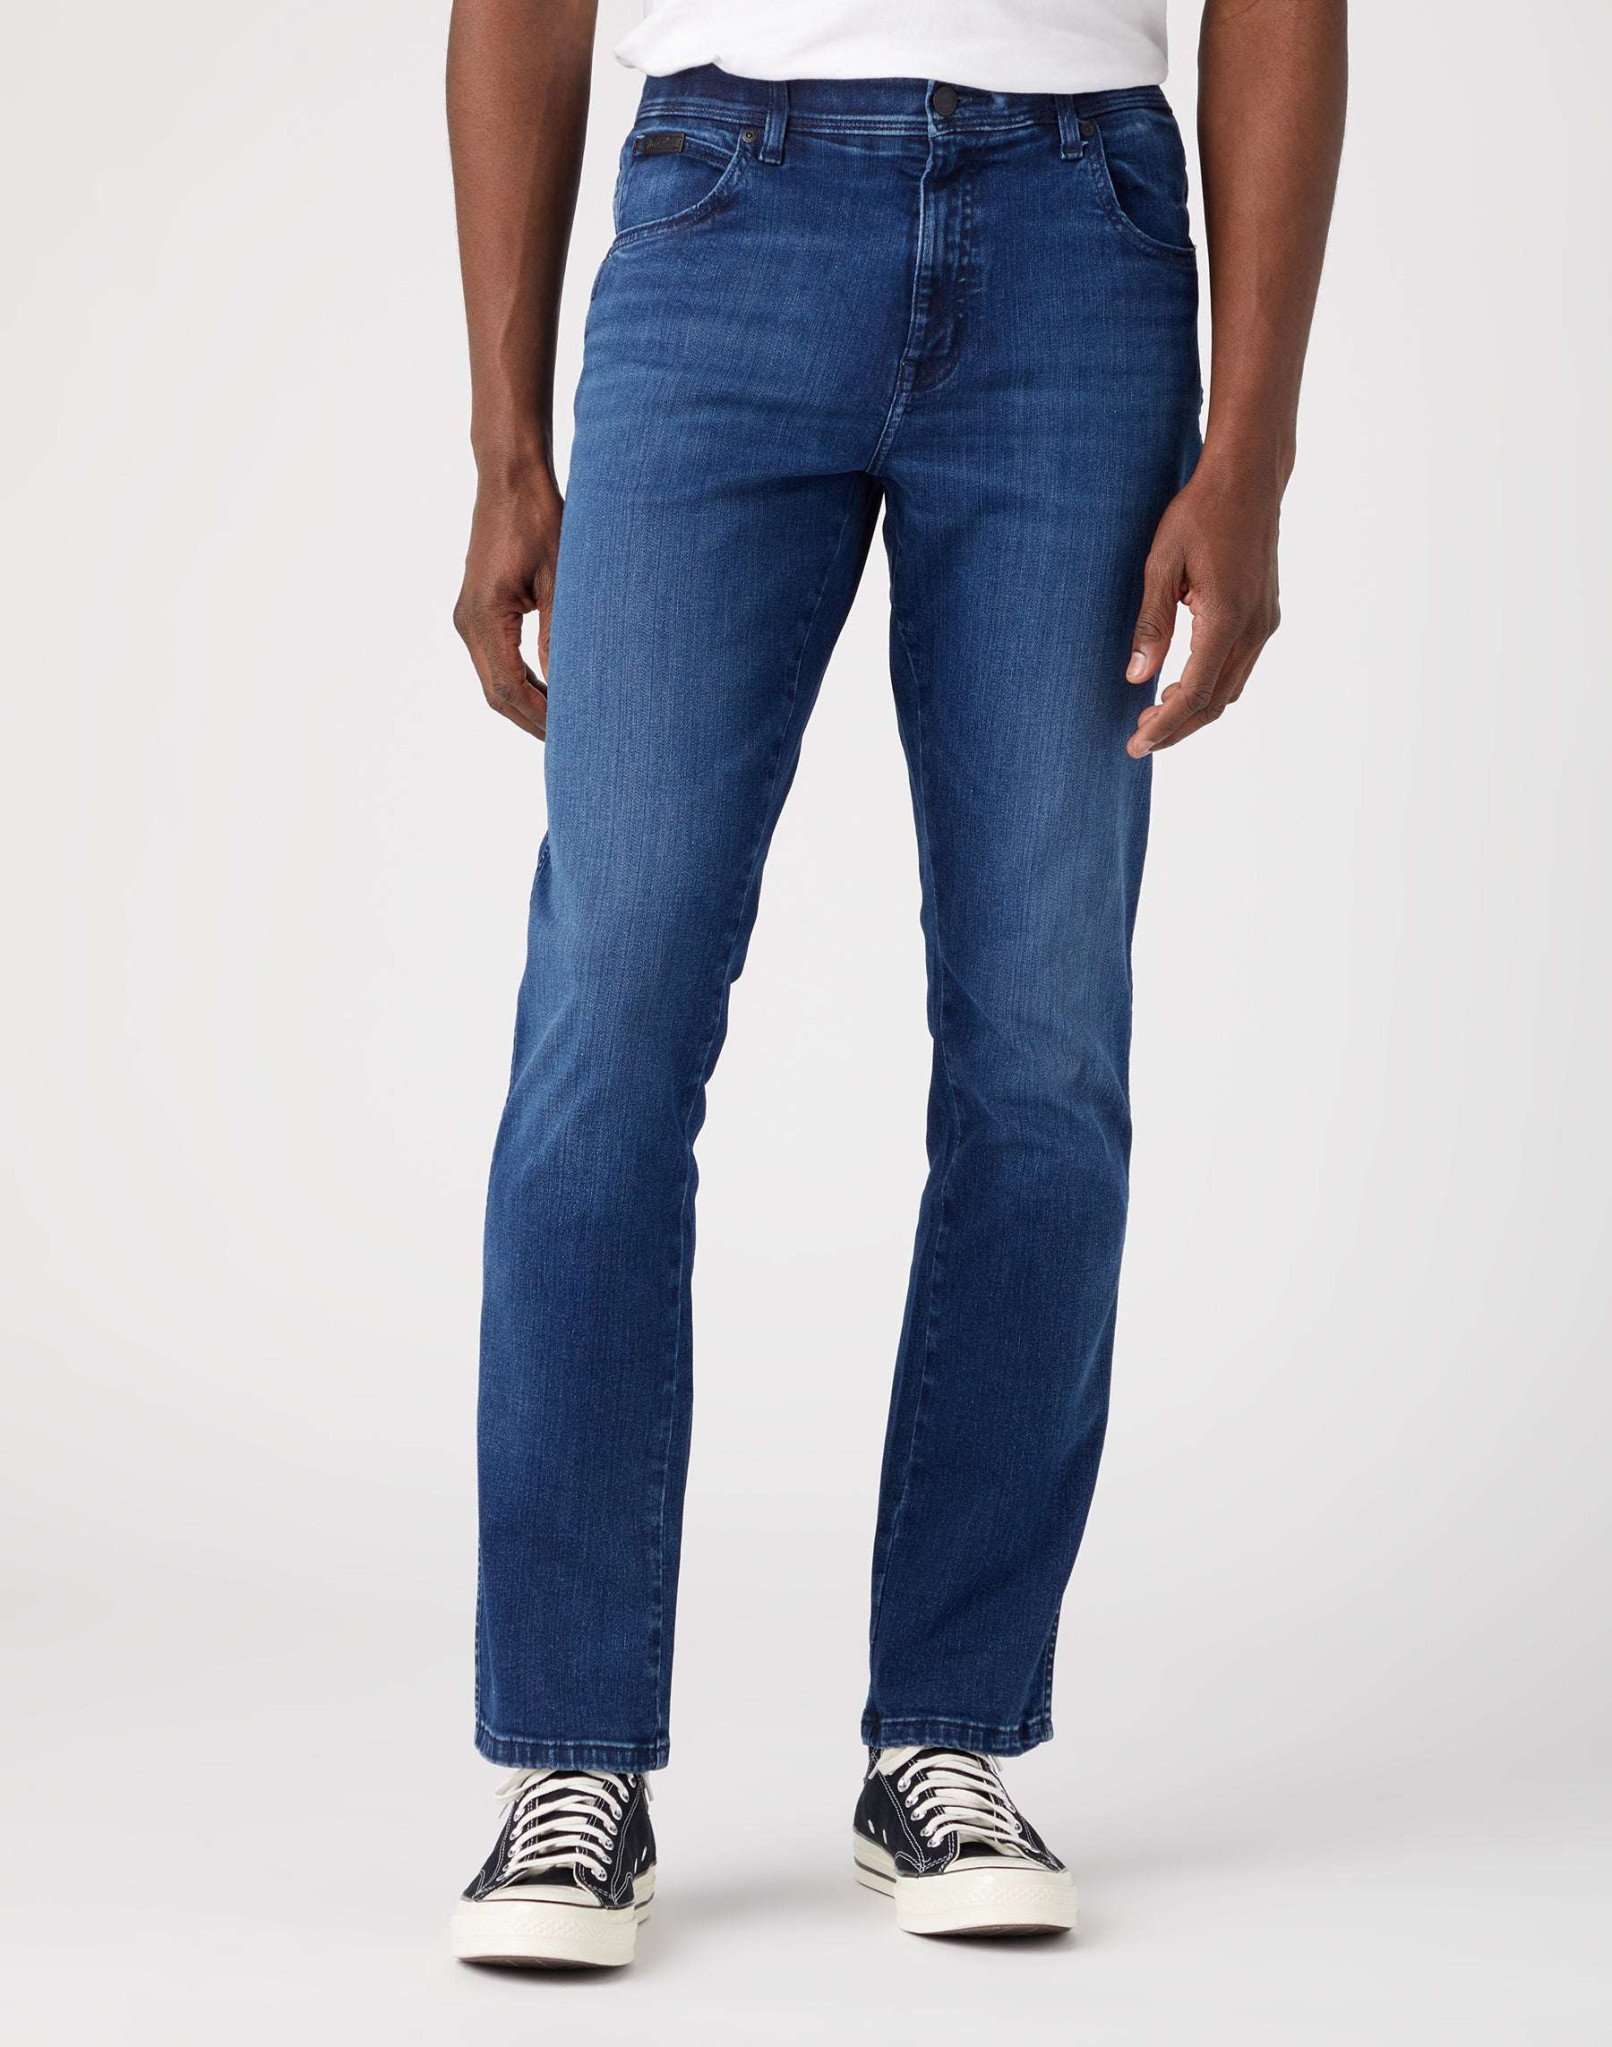 Texas Slim in Apollo Jeans Wrangler   